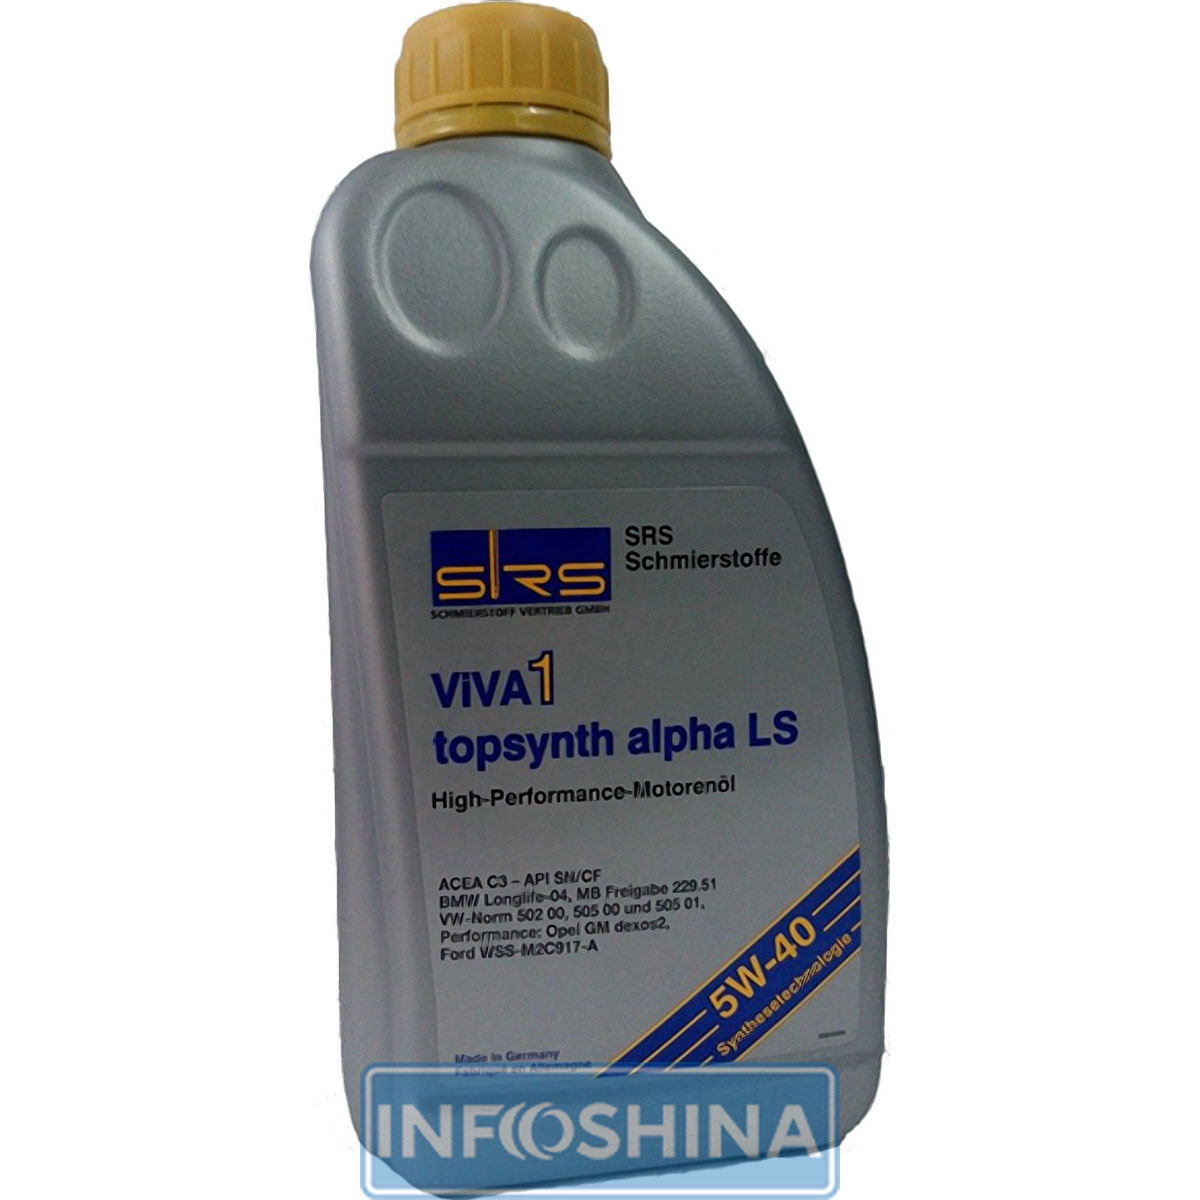 Купить масло SRS ViVA 1 topsynth alpha LS 5W-40 (1л)